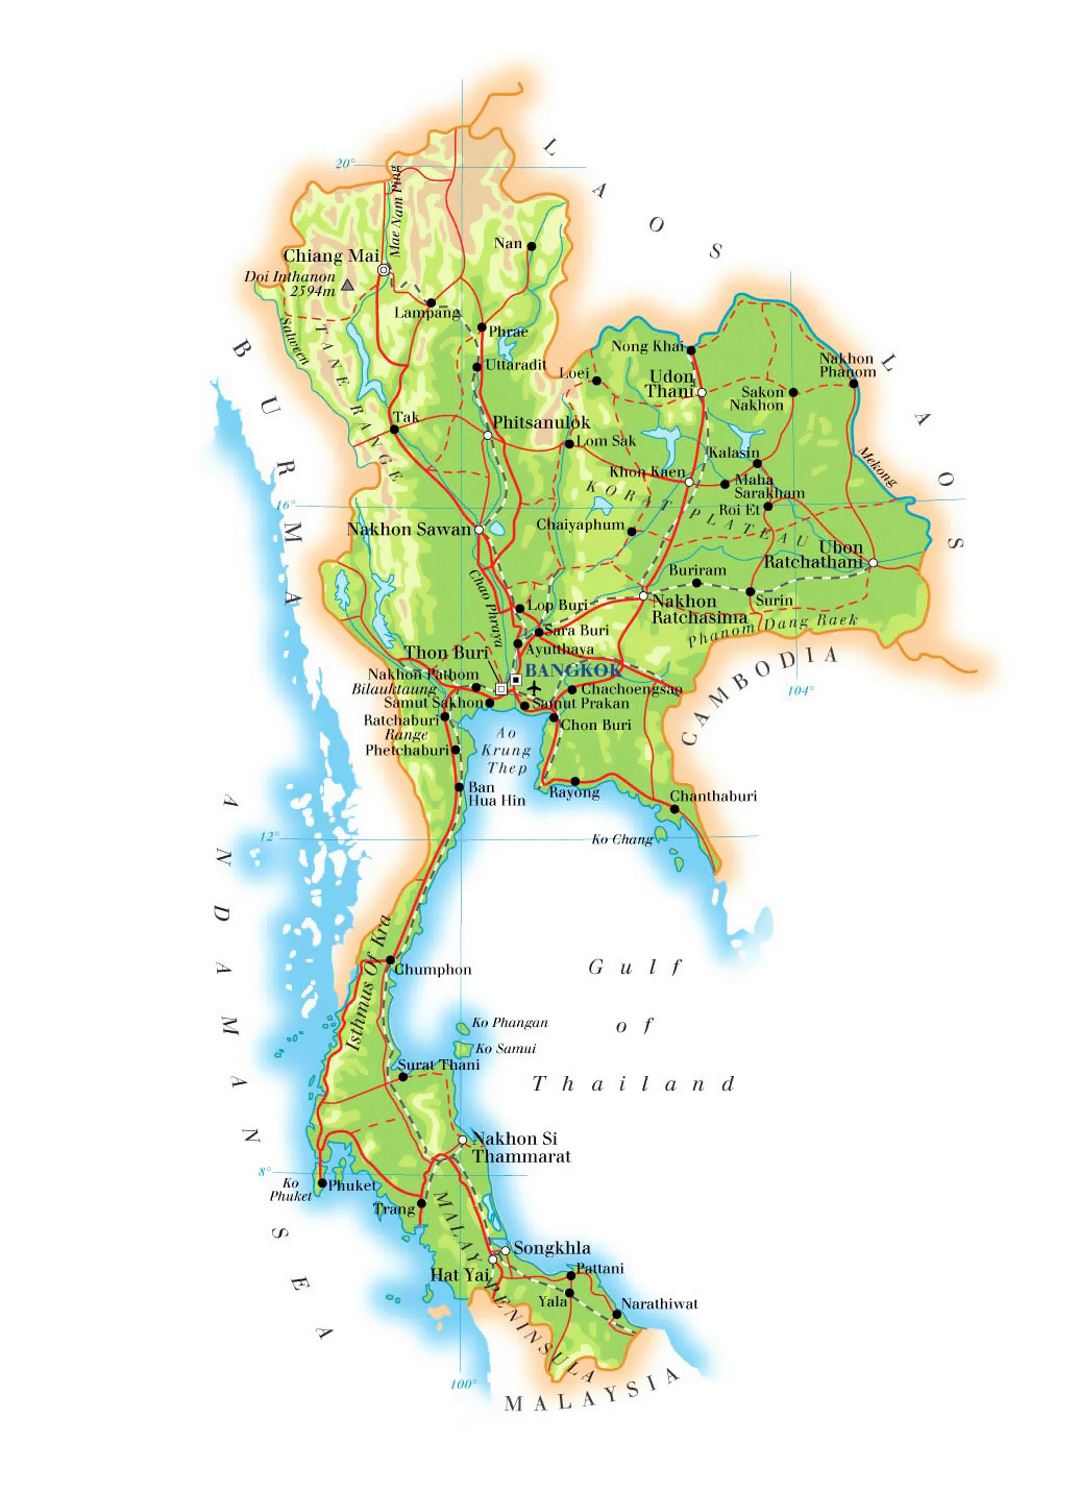 Detallado mapa de elevación de Tailandia con carreteras, ferrocarriles, principales ciudades y aeropuertos